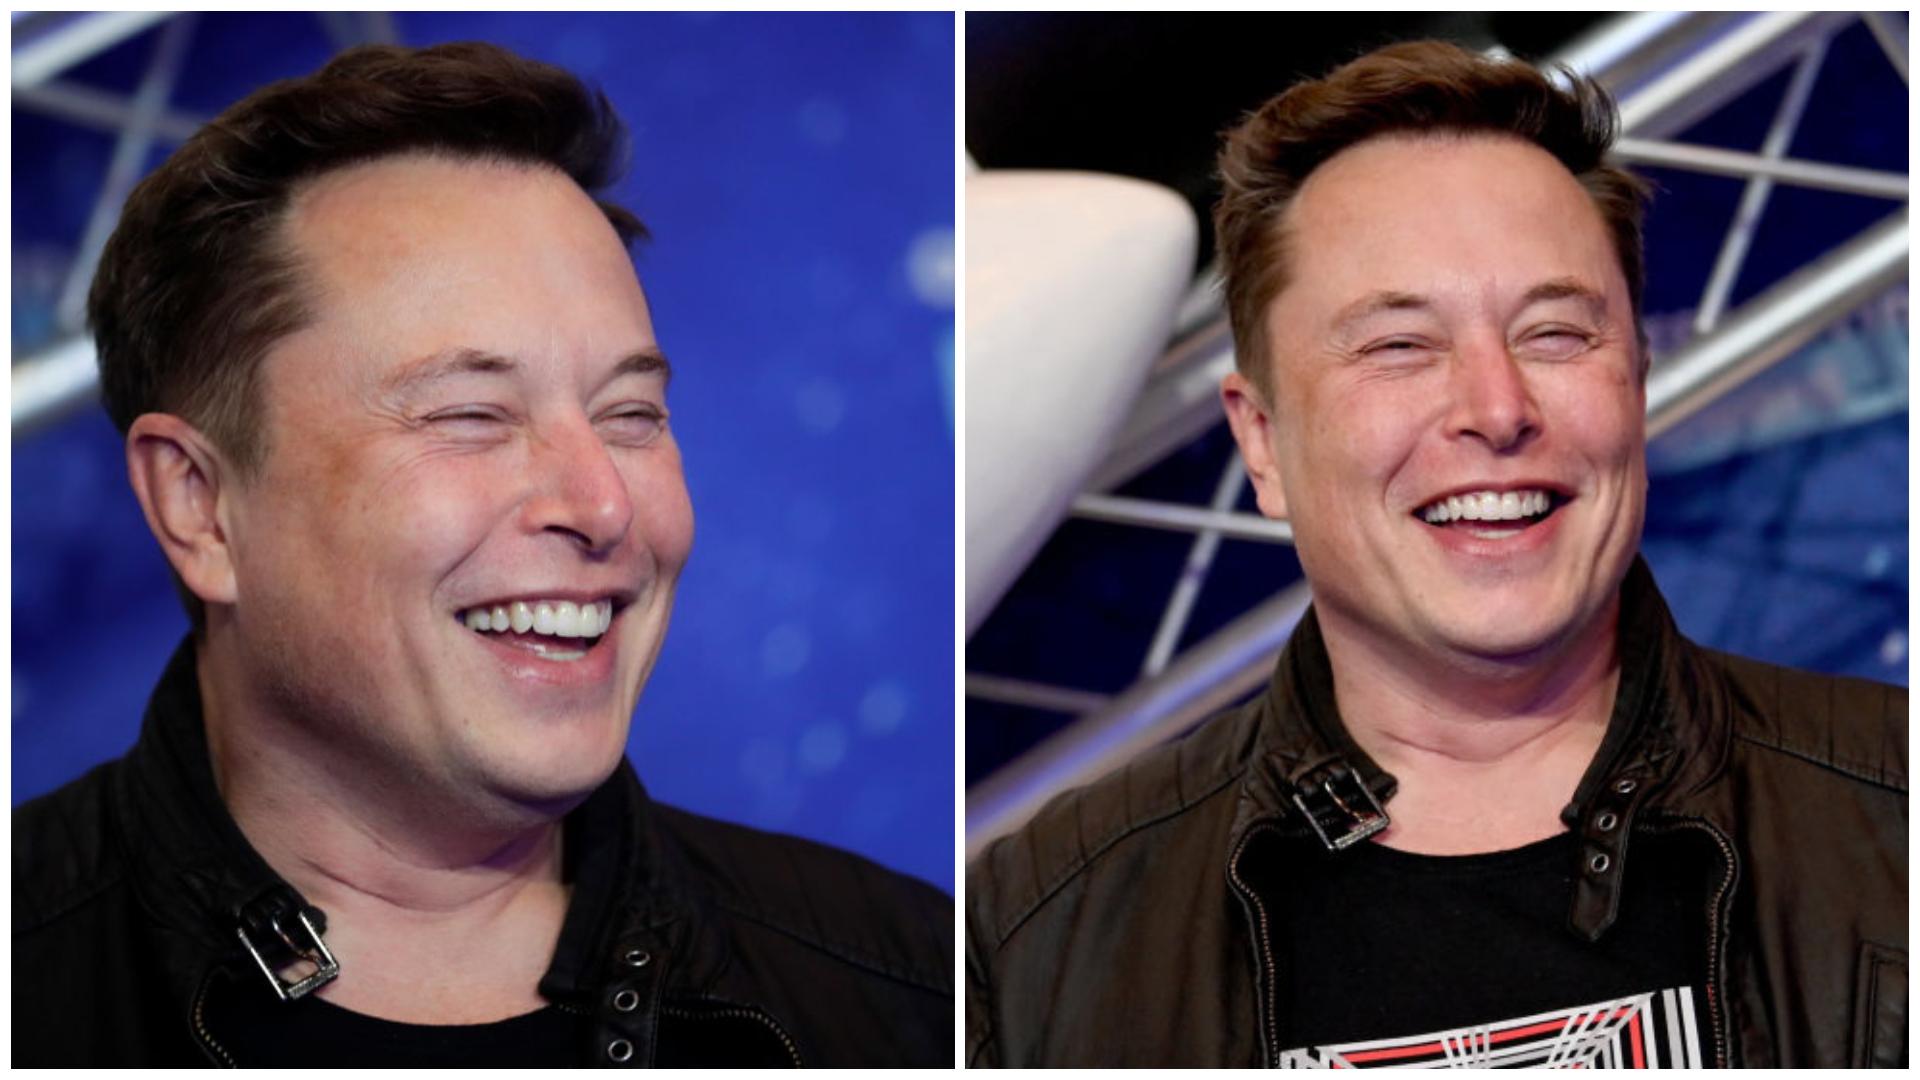 Colaj cu Elon Musk